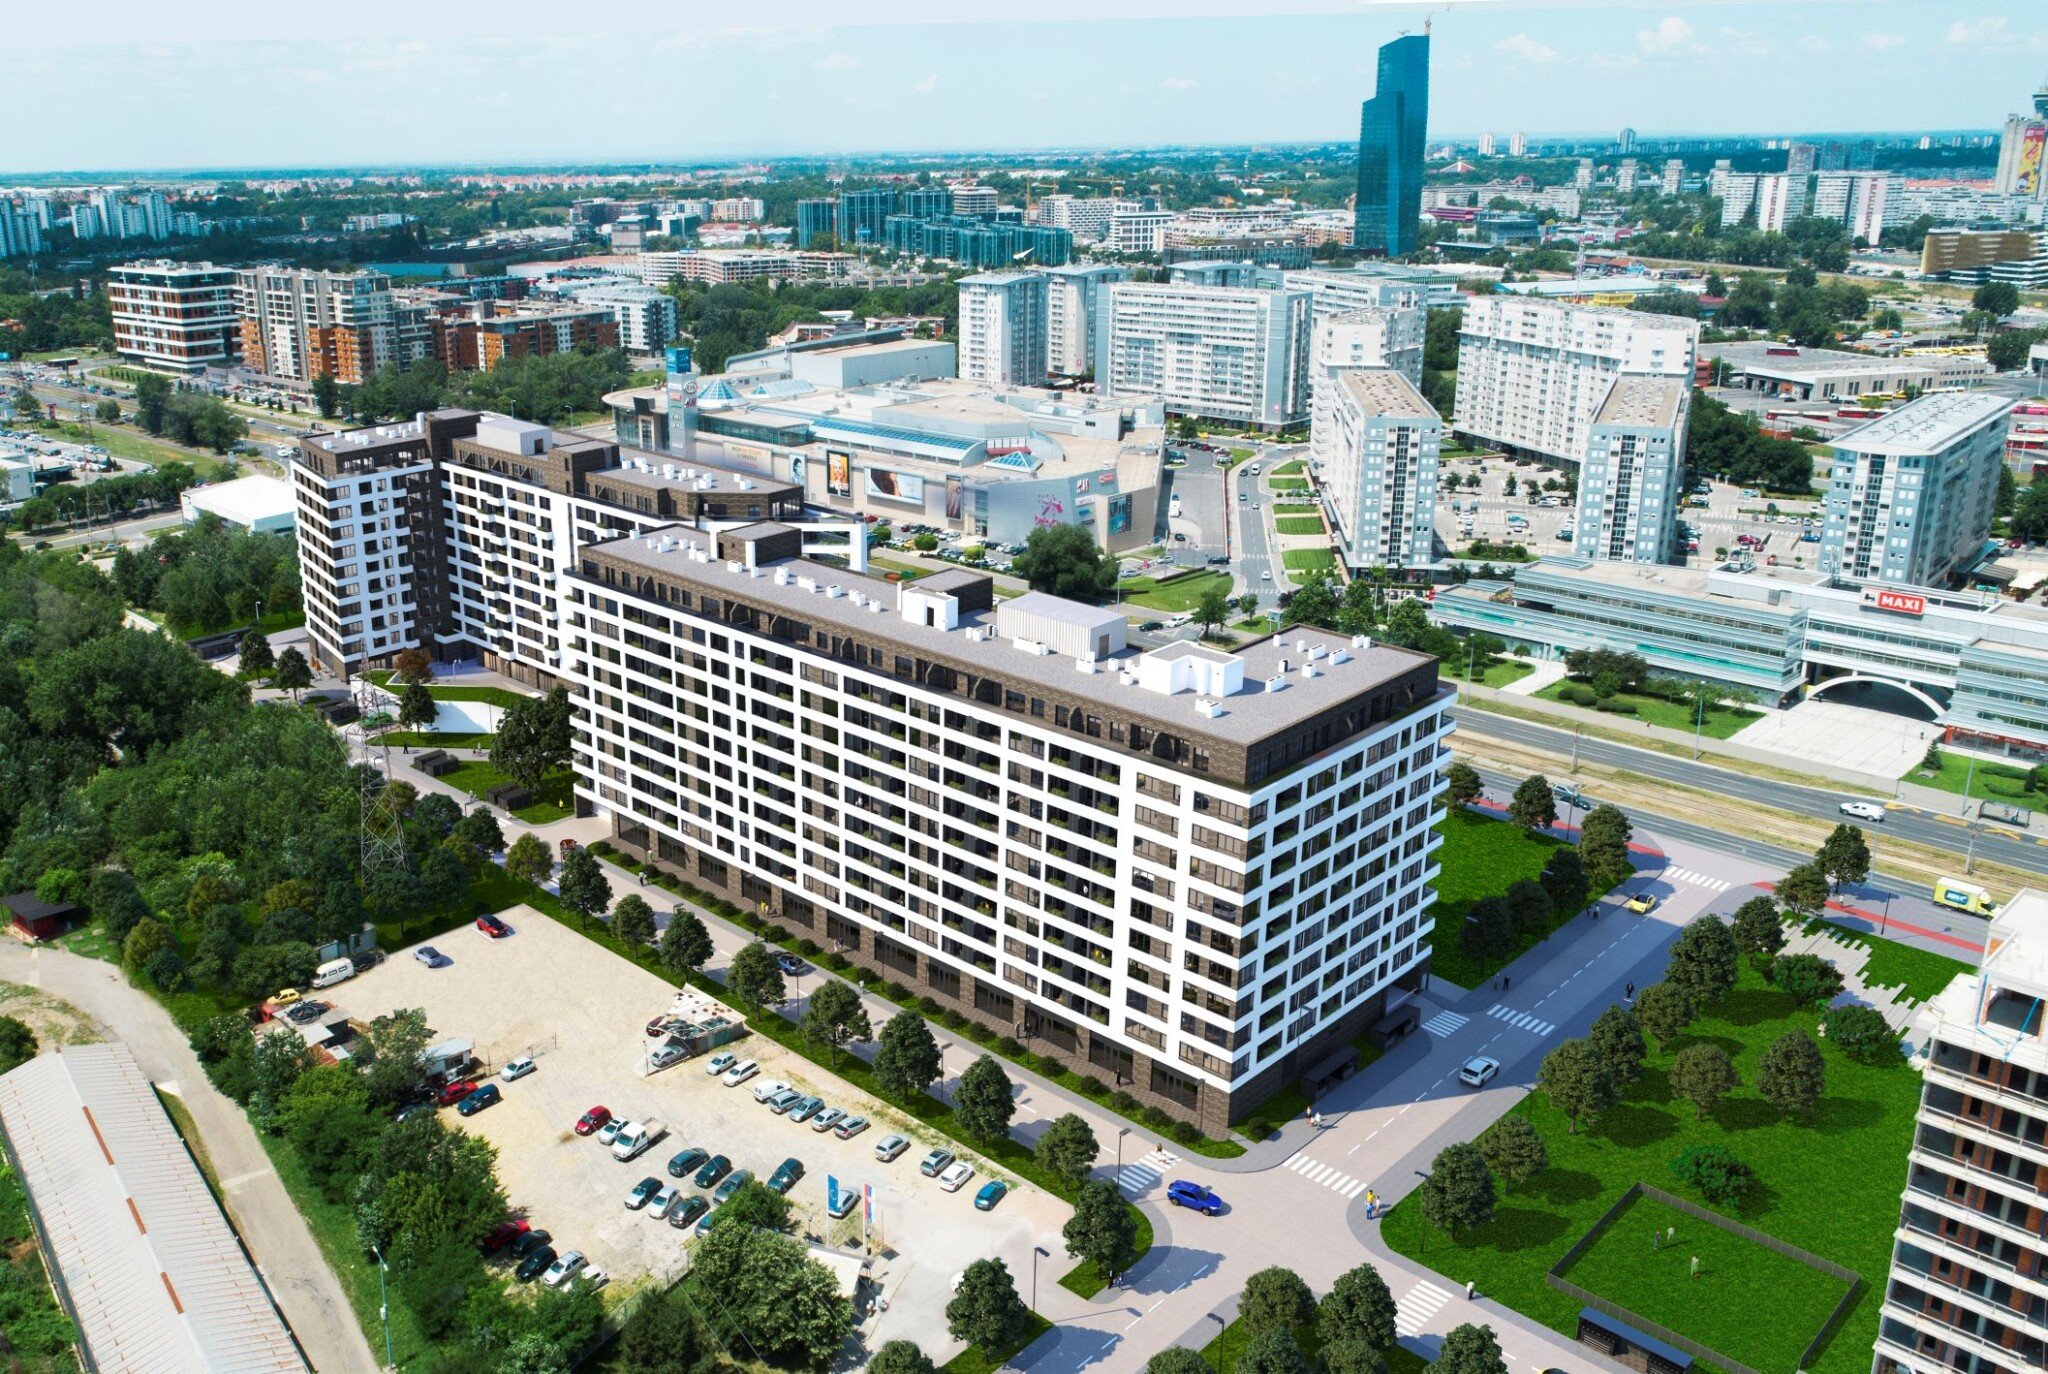 Developer UDI získal potřebná povolení. Výstavba bytů v Bělehradě začne příští měsíc